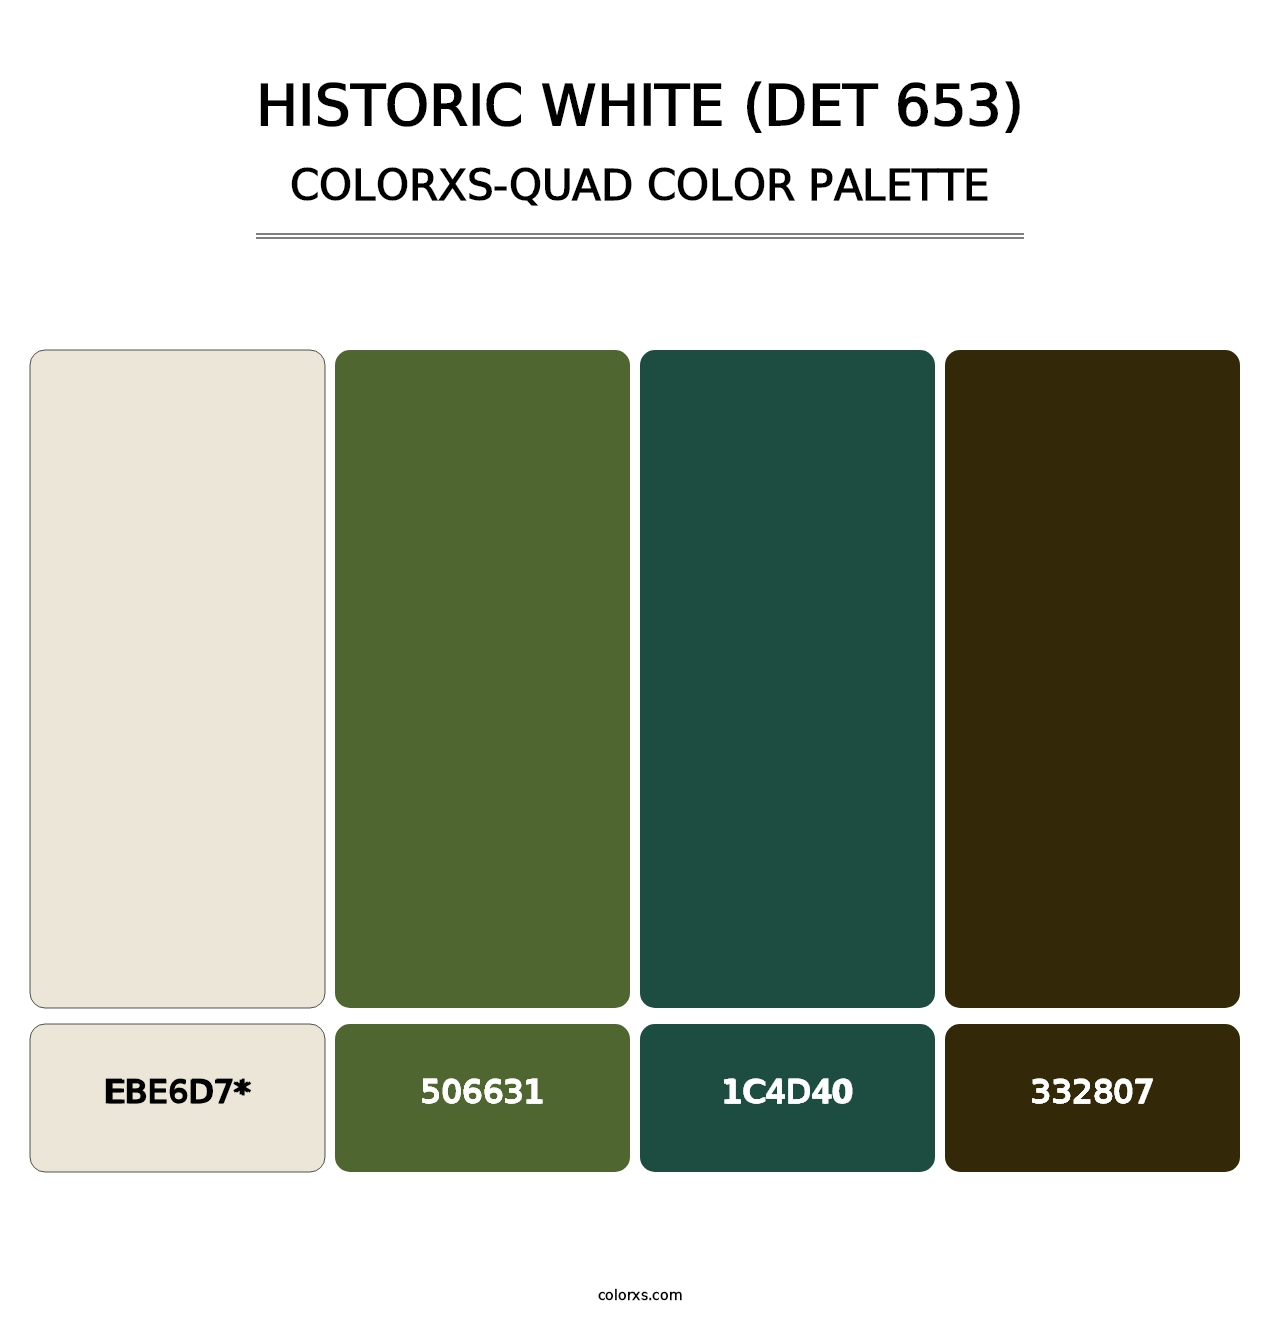 Historic White (DET 653) - Colorxs Quad Palette